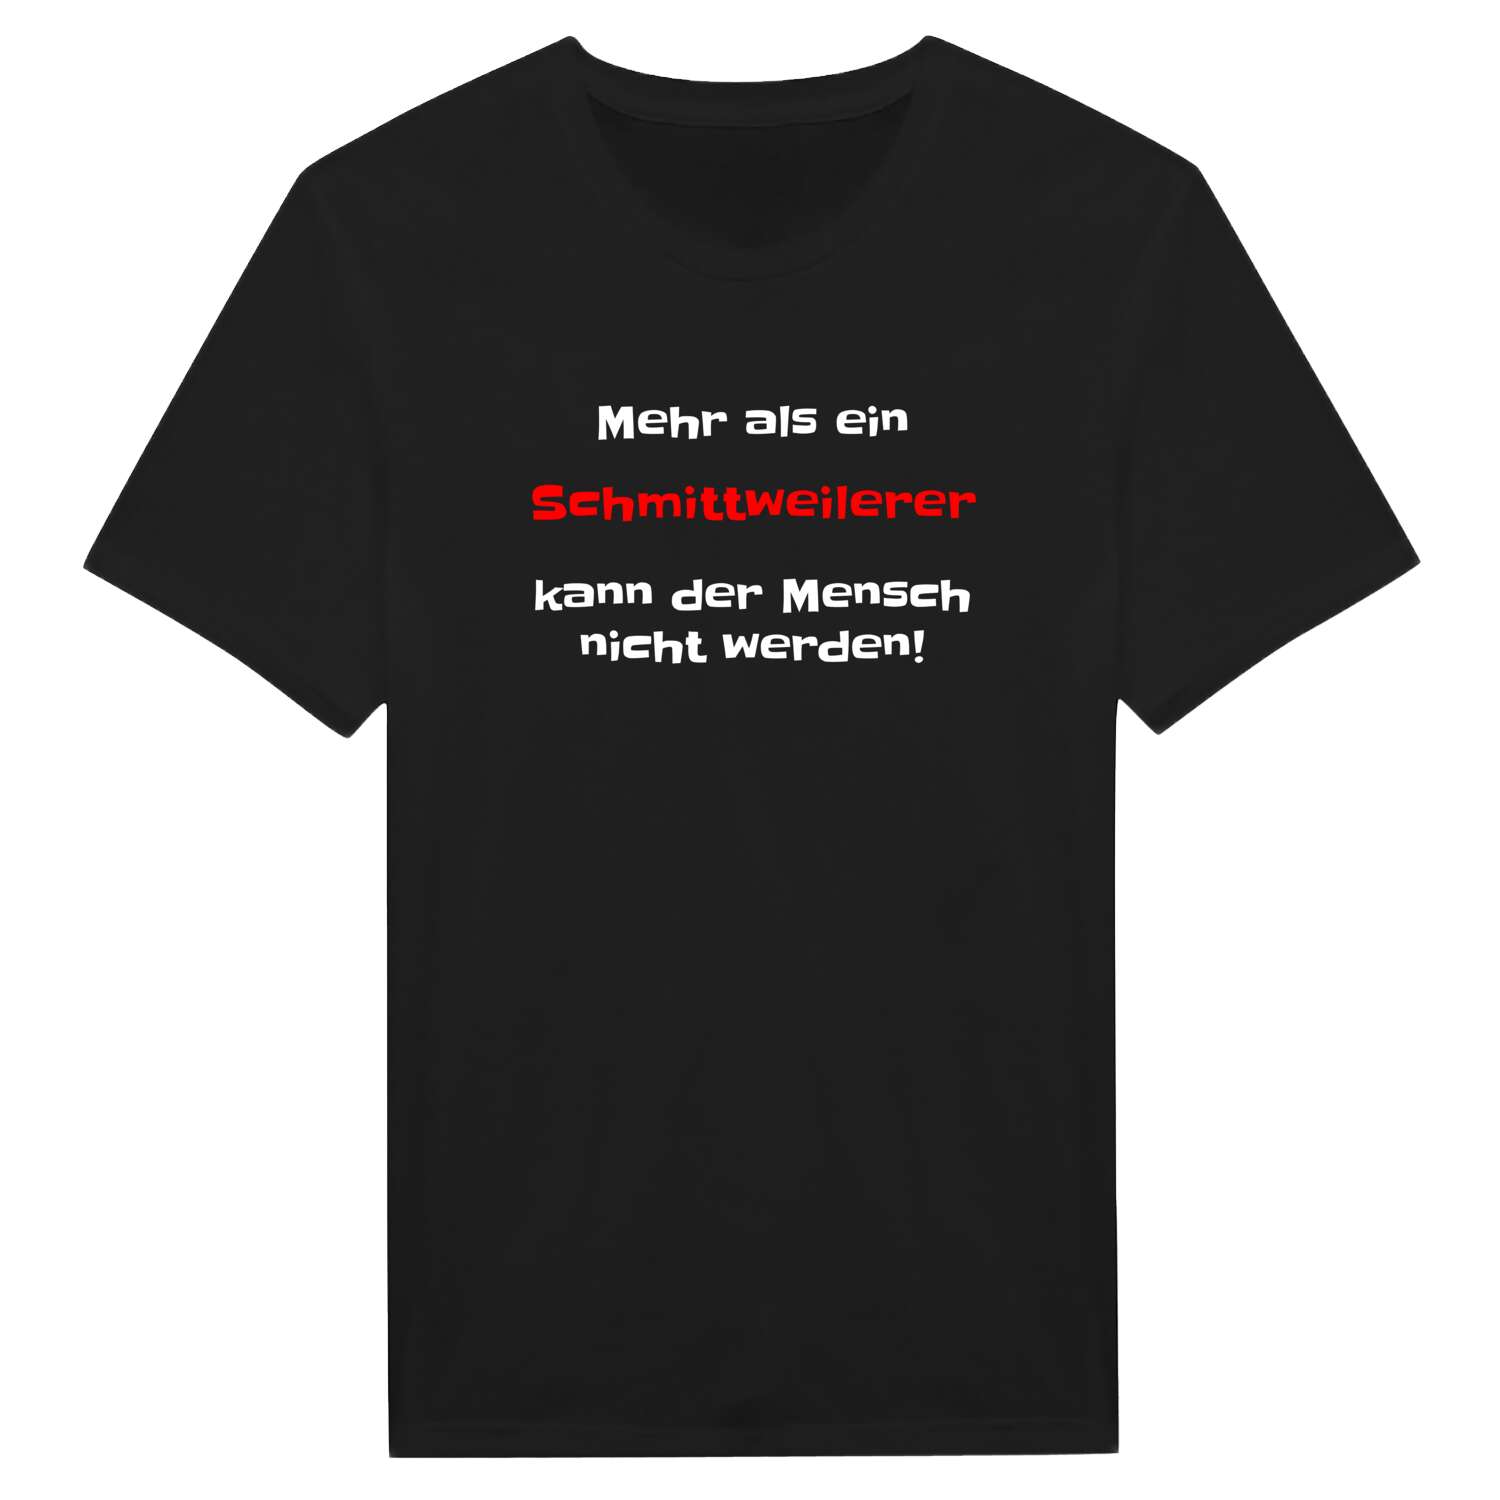 Schmittweiler T-Shirt »Mehr als ein«